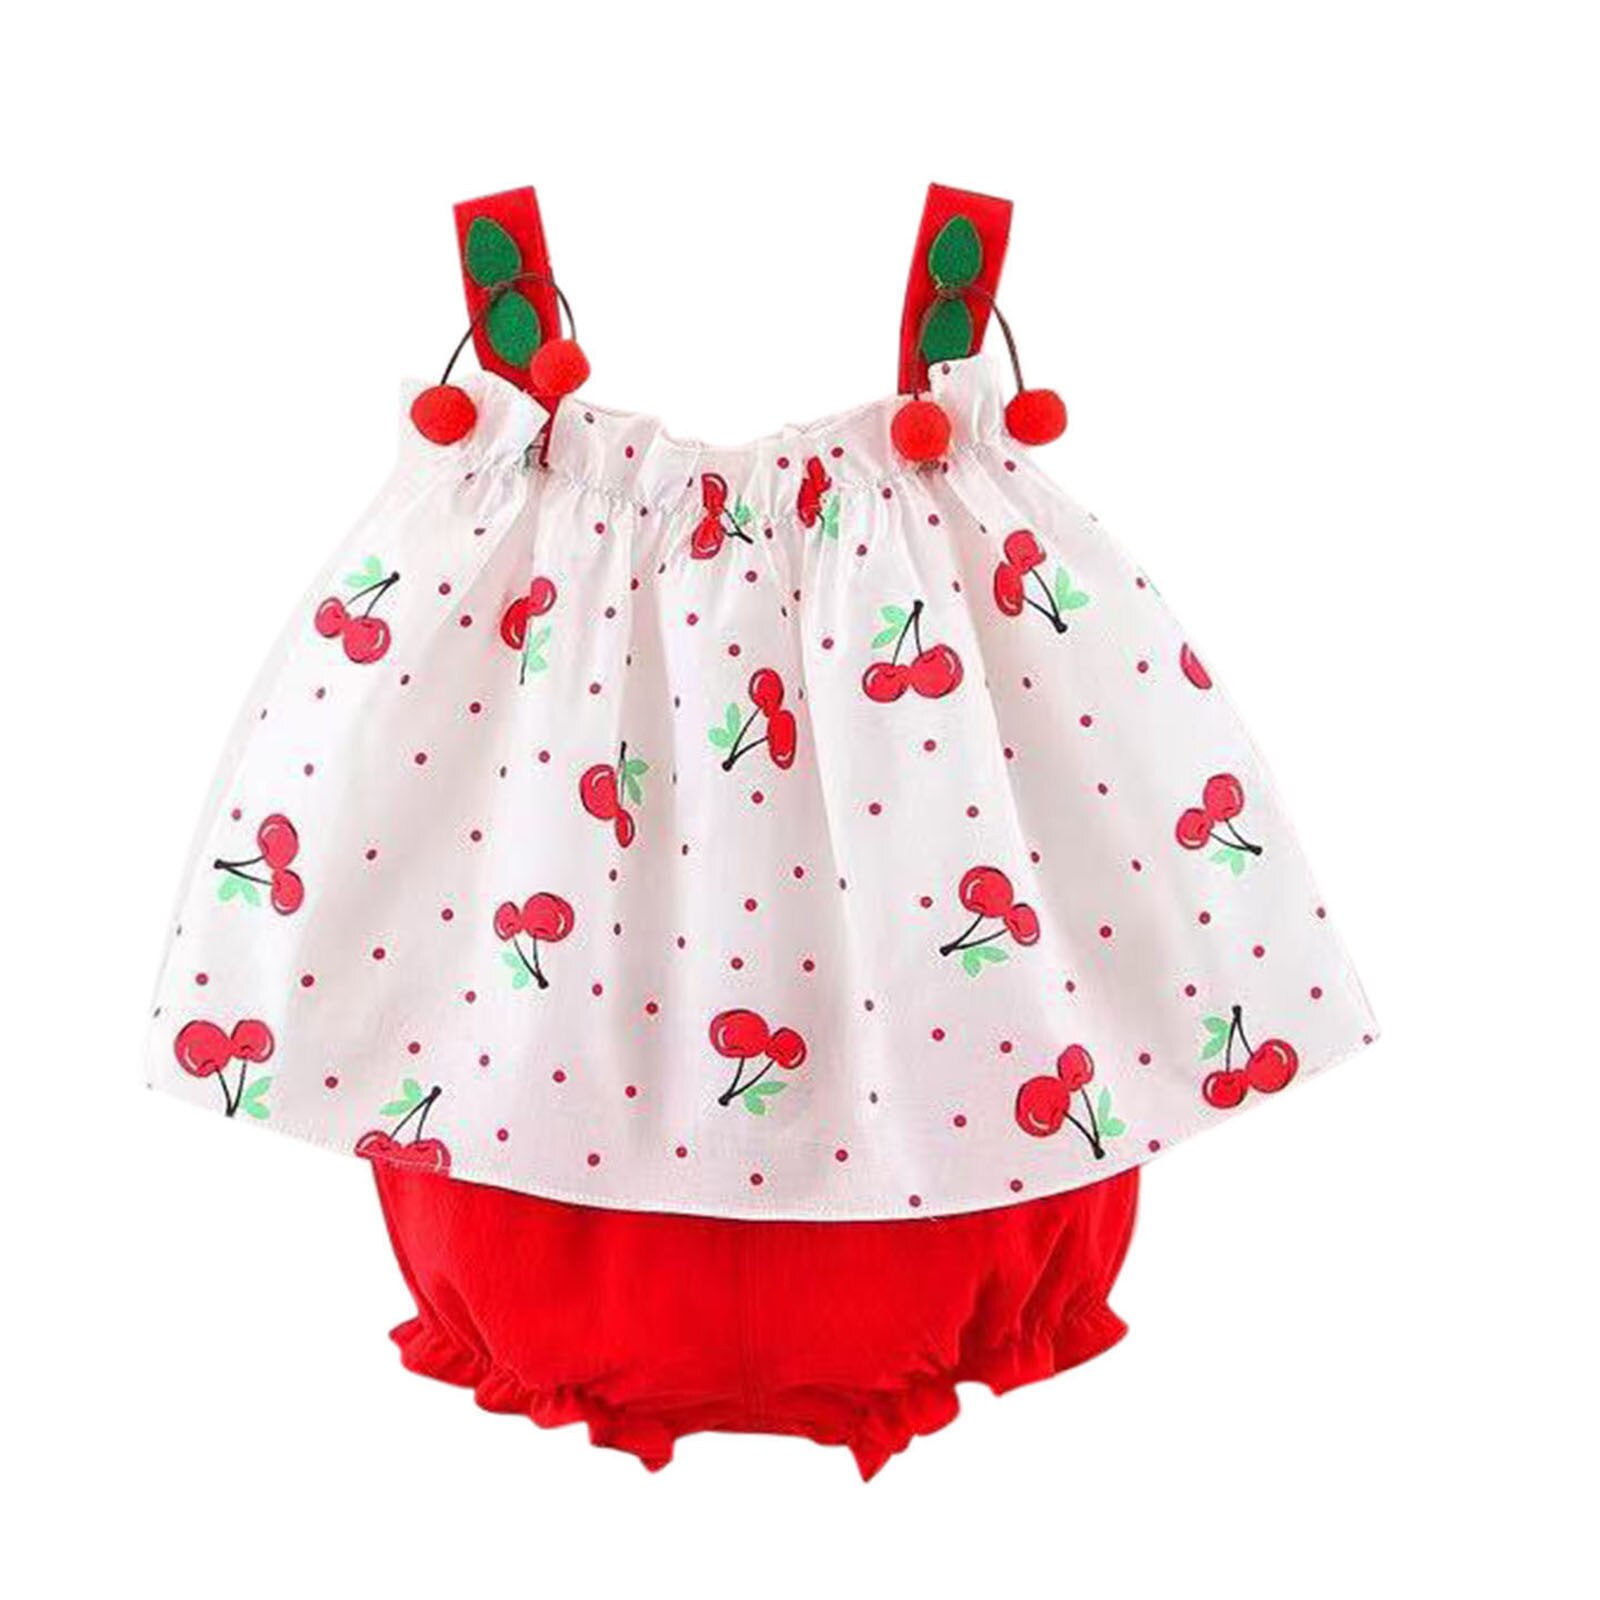 Meisjes Kleding Mouwloze Jurk Baby Baby Meisjes Bretels Polka Dot Print Jurk Tops Shorts Outfits Kinderkleding Sets: Rood / 3T